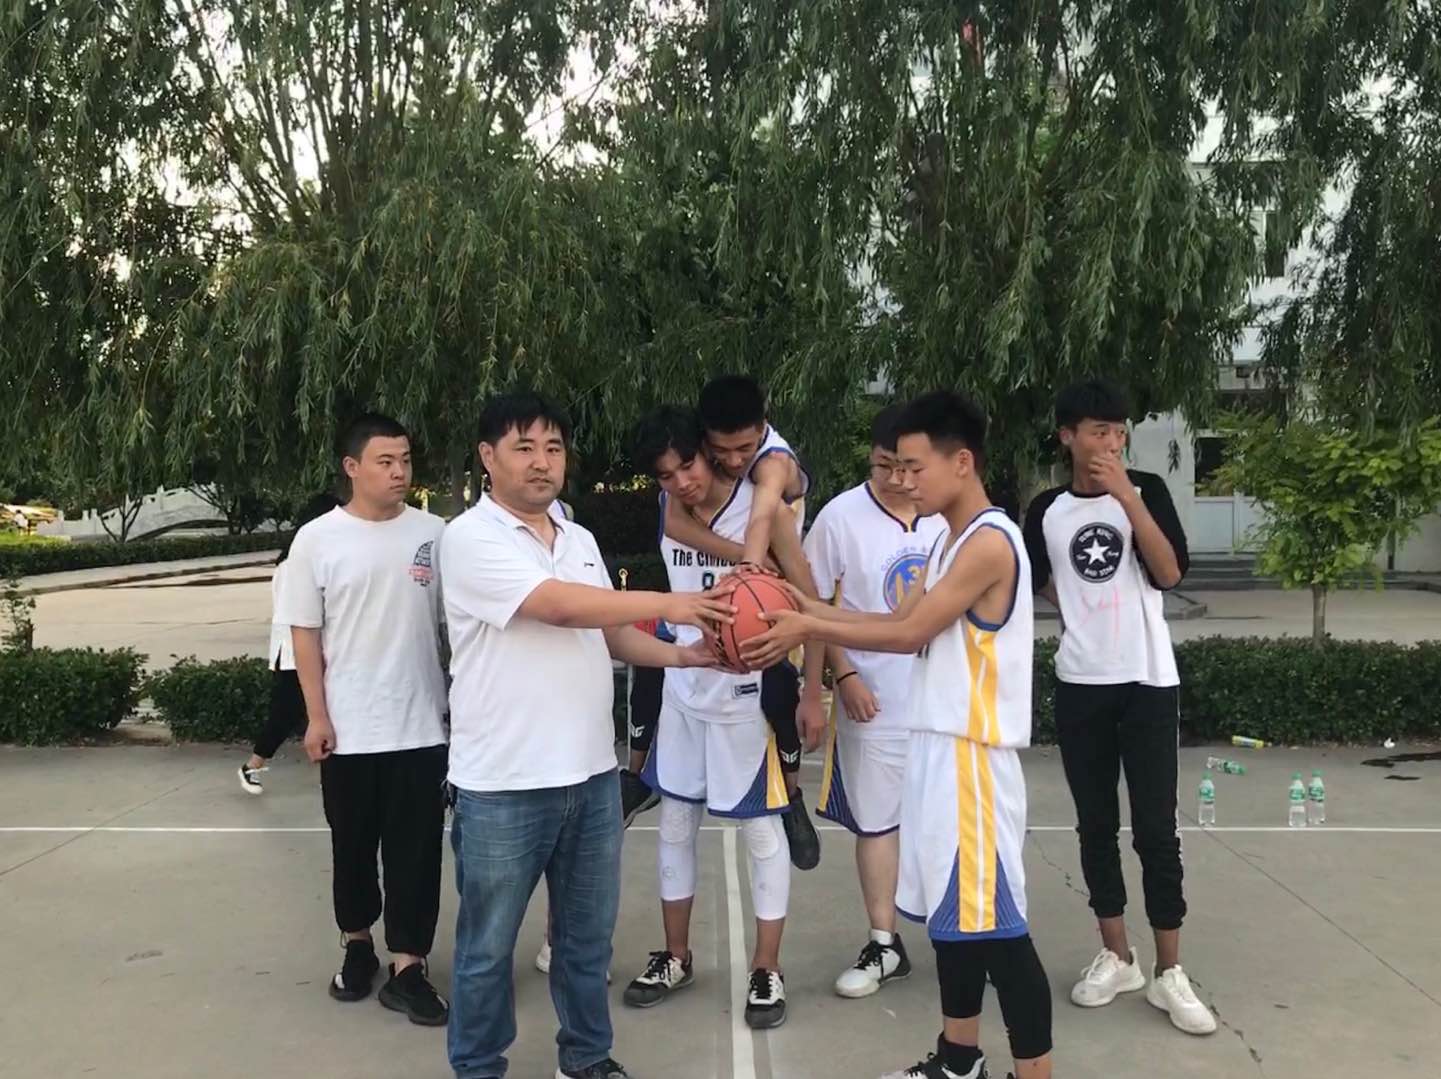 安平县综合职业技术学校2019年篮球赛圆满闭幕